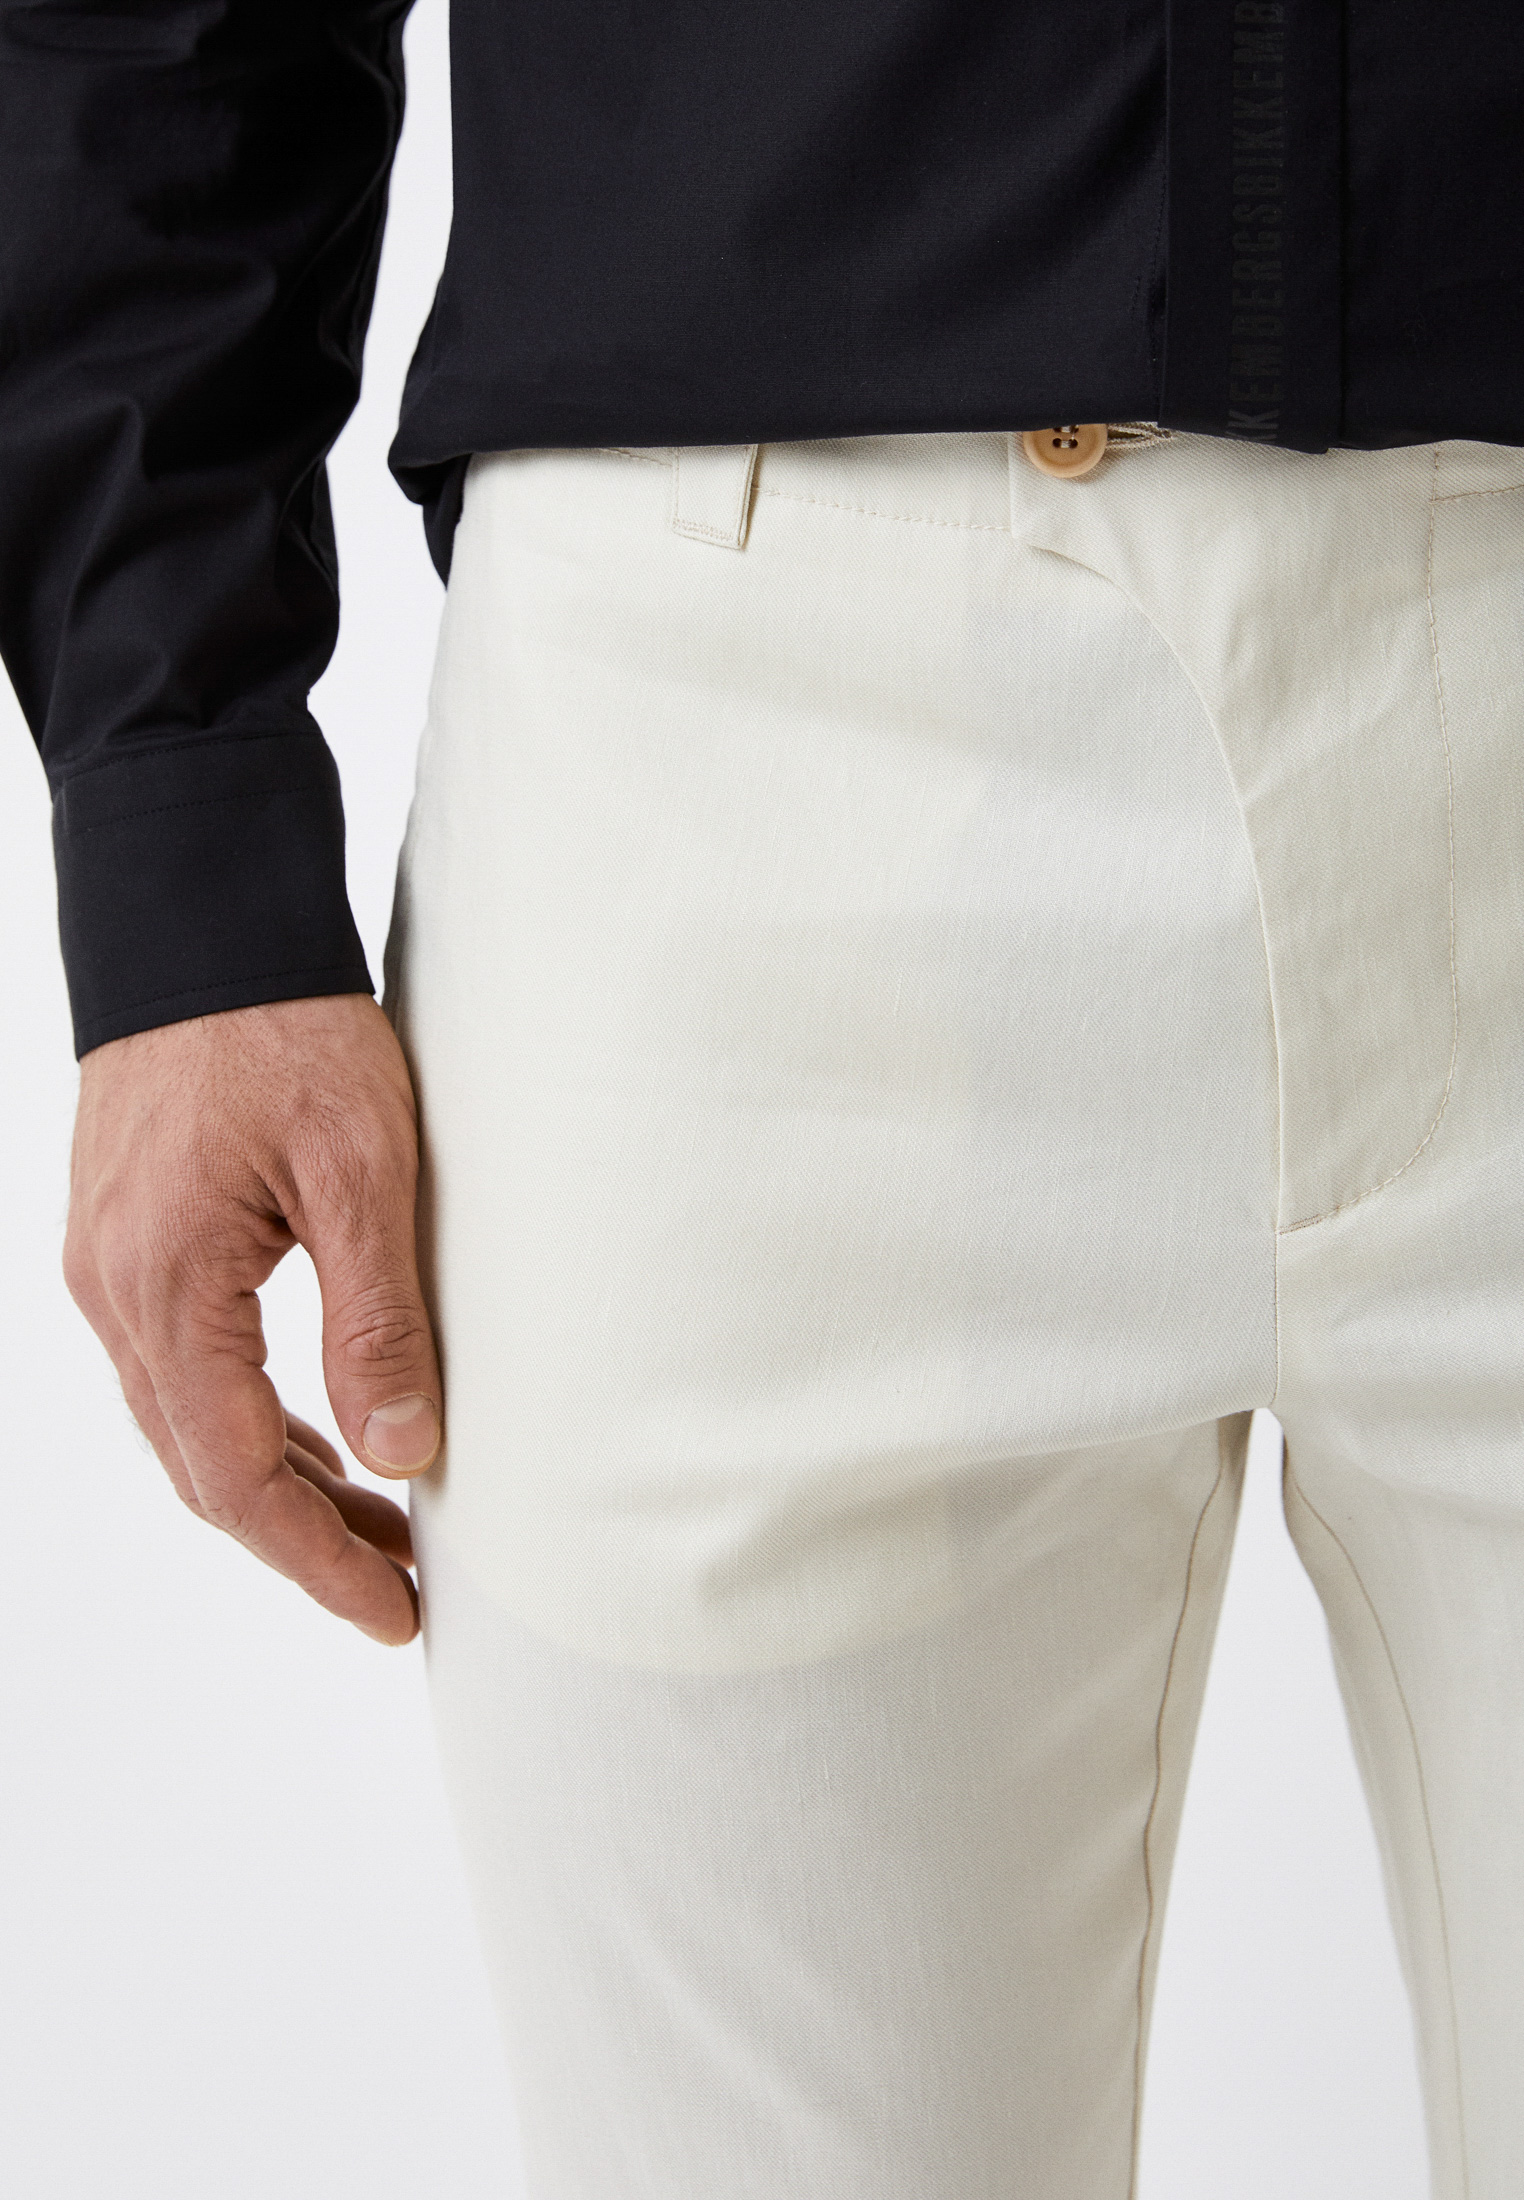 Мужские повседневные брюки Bikkembergs (Биккембергс) C P 060 00 S 3412: изображение 4